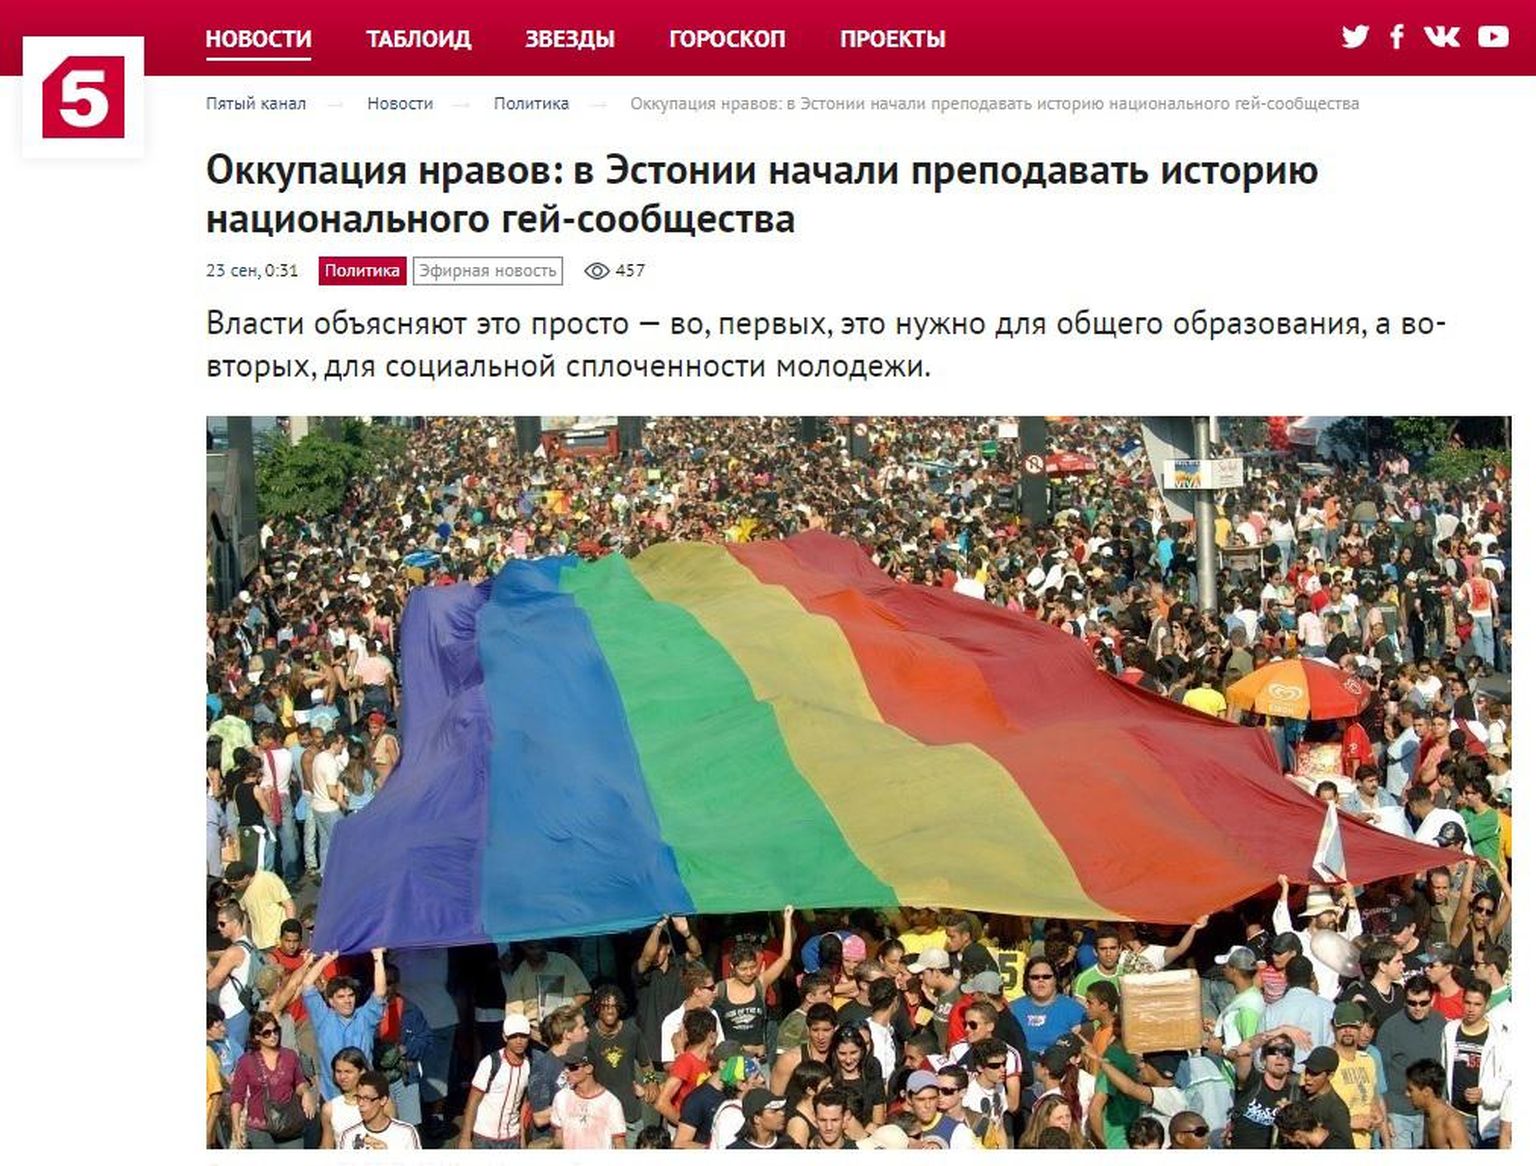 Lisaks teleloole avaldati Peterburi 5. kanali veebilehel artikkel, kus vihjatakse samuti, et Tallinna Ülikoolis õpetatakse geiseksi. 